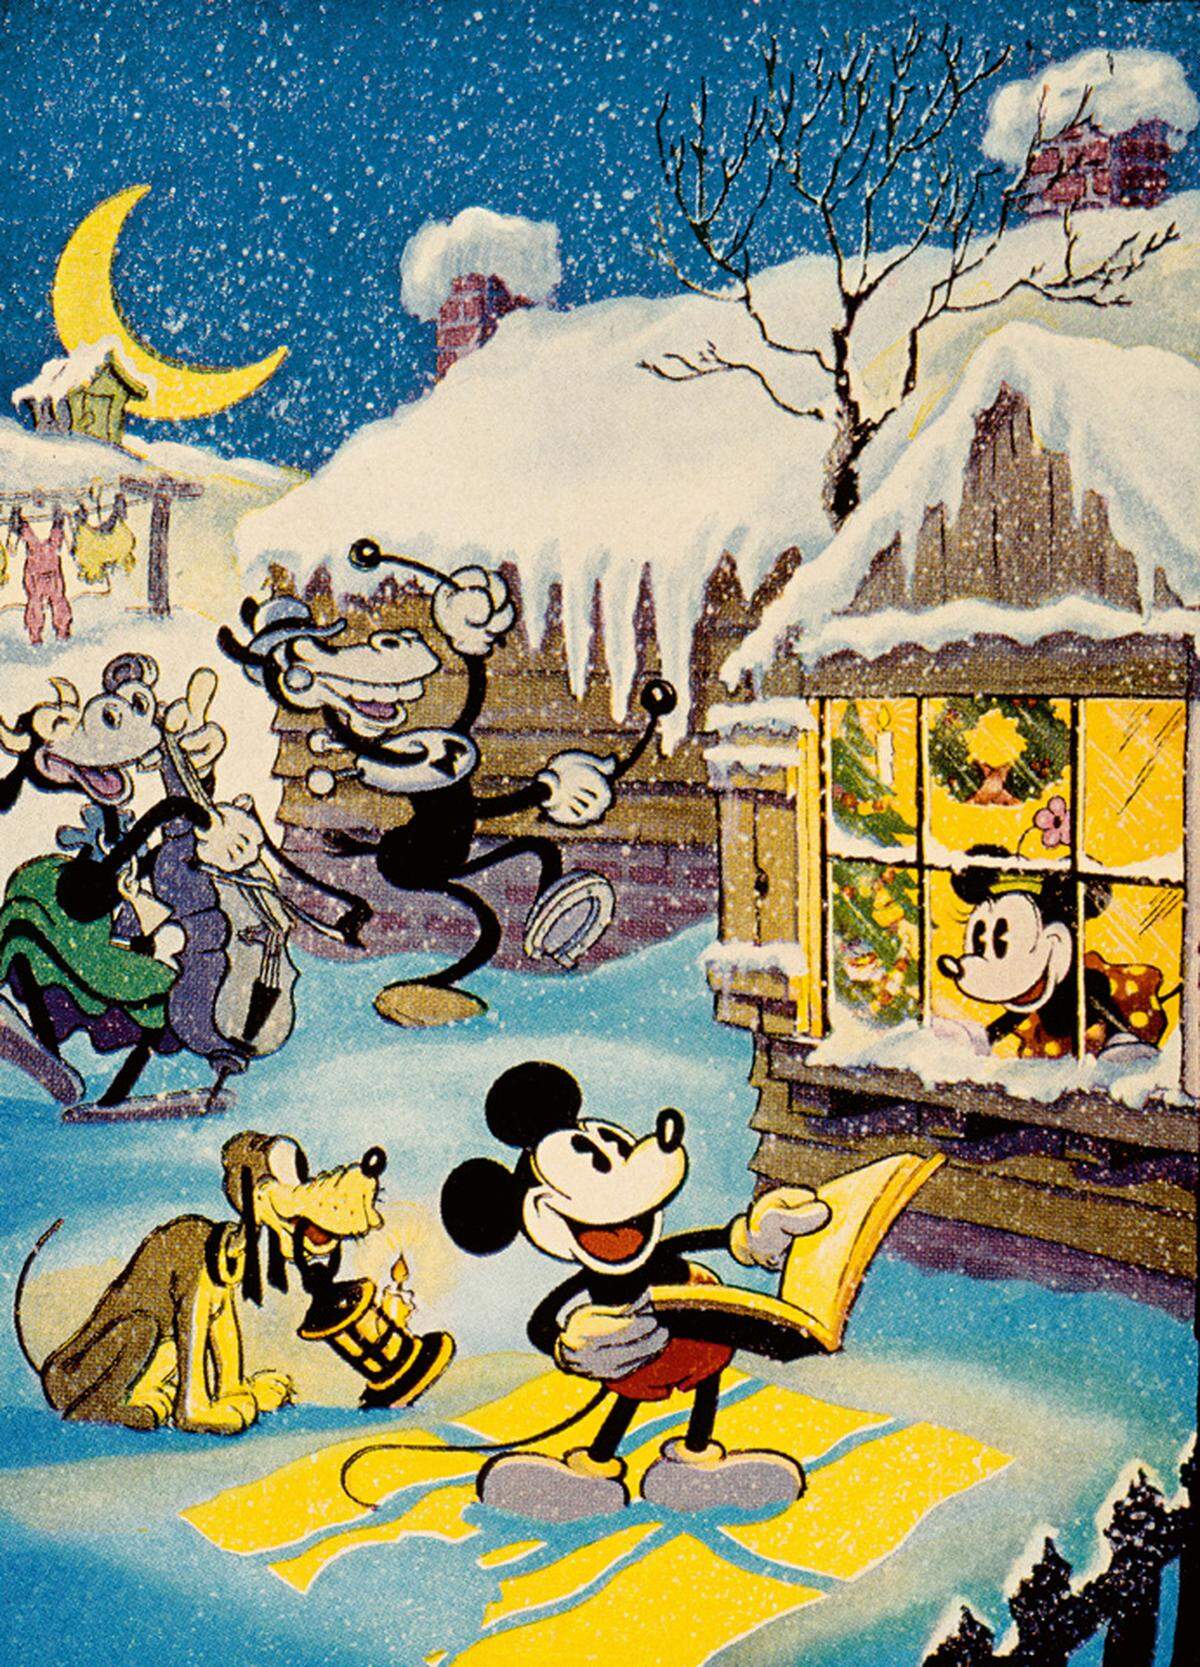 Trotz des Erfolgs der Figur änderte Walt Disney sie Schritt für Schritt. So verlor Micky bald seine pfiffige Unbefangenheit und anarchisch-rebellenhafte Respektlosigkeit, die anfangs sogar zu Protesten amerikanischer Elternverbände geführt hat.